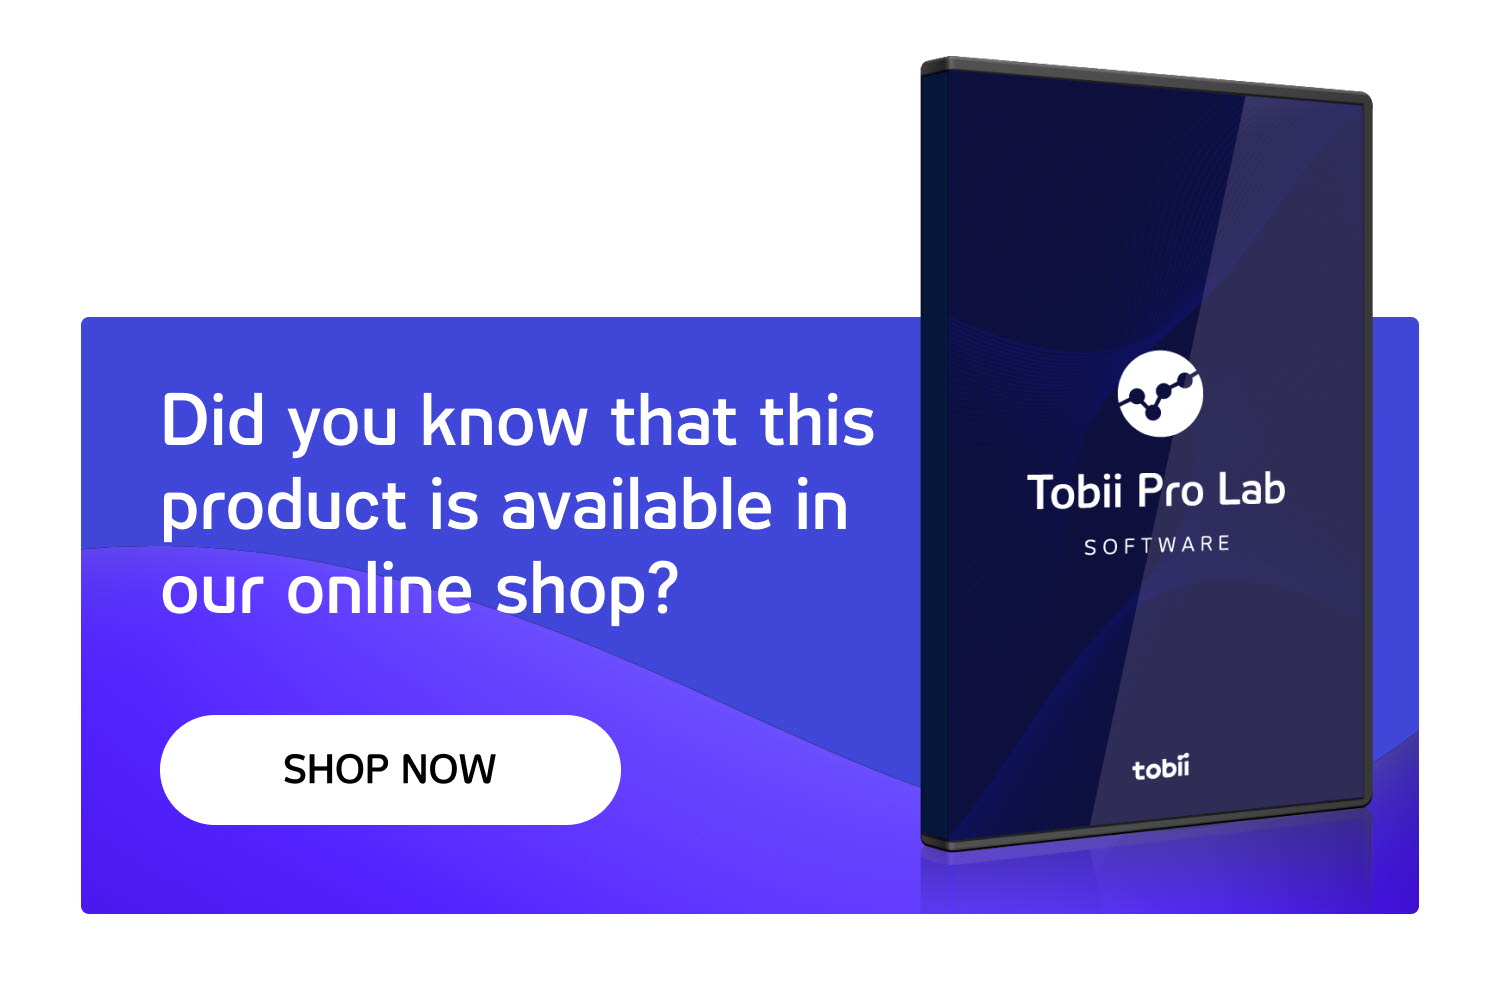 Tobii Pro Lab E-commerce CTA block